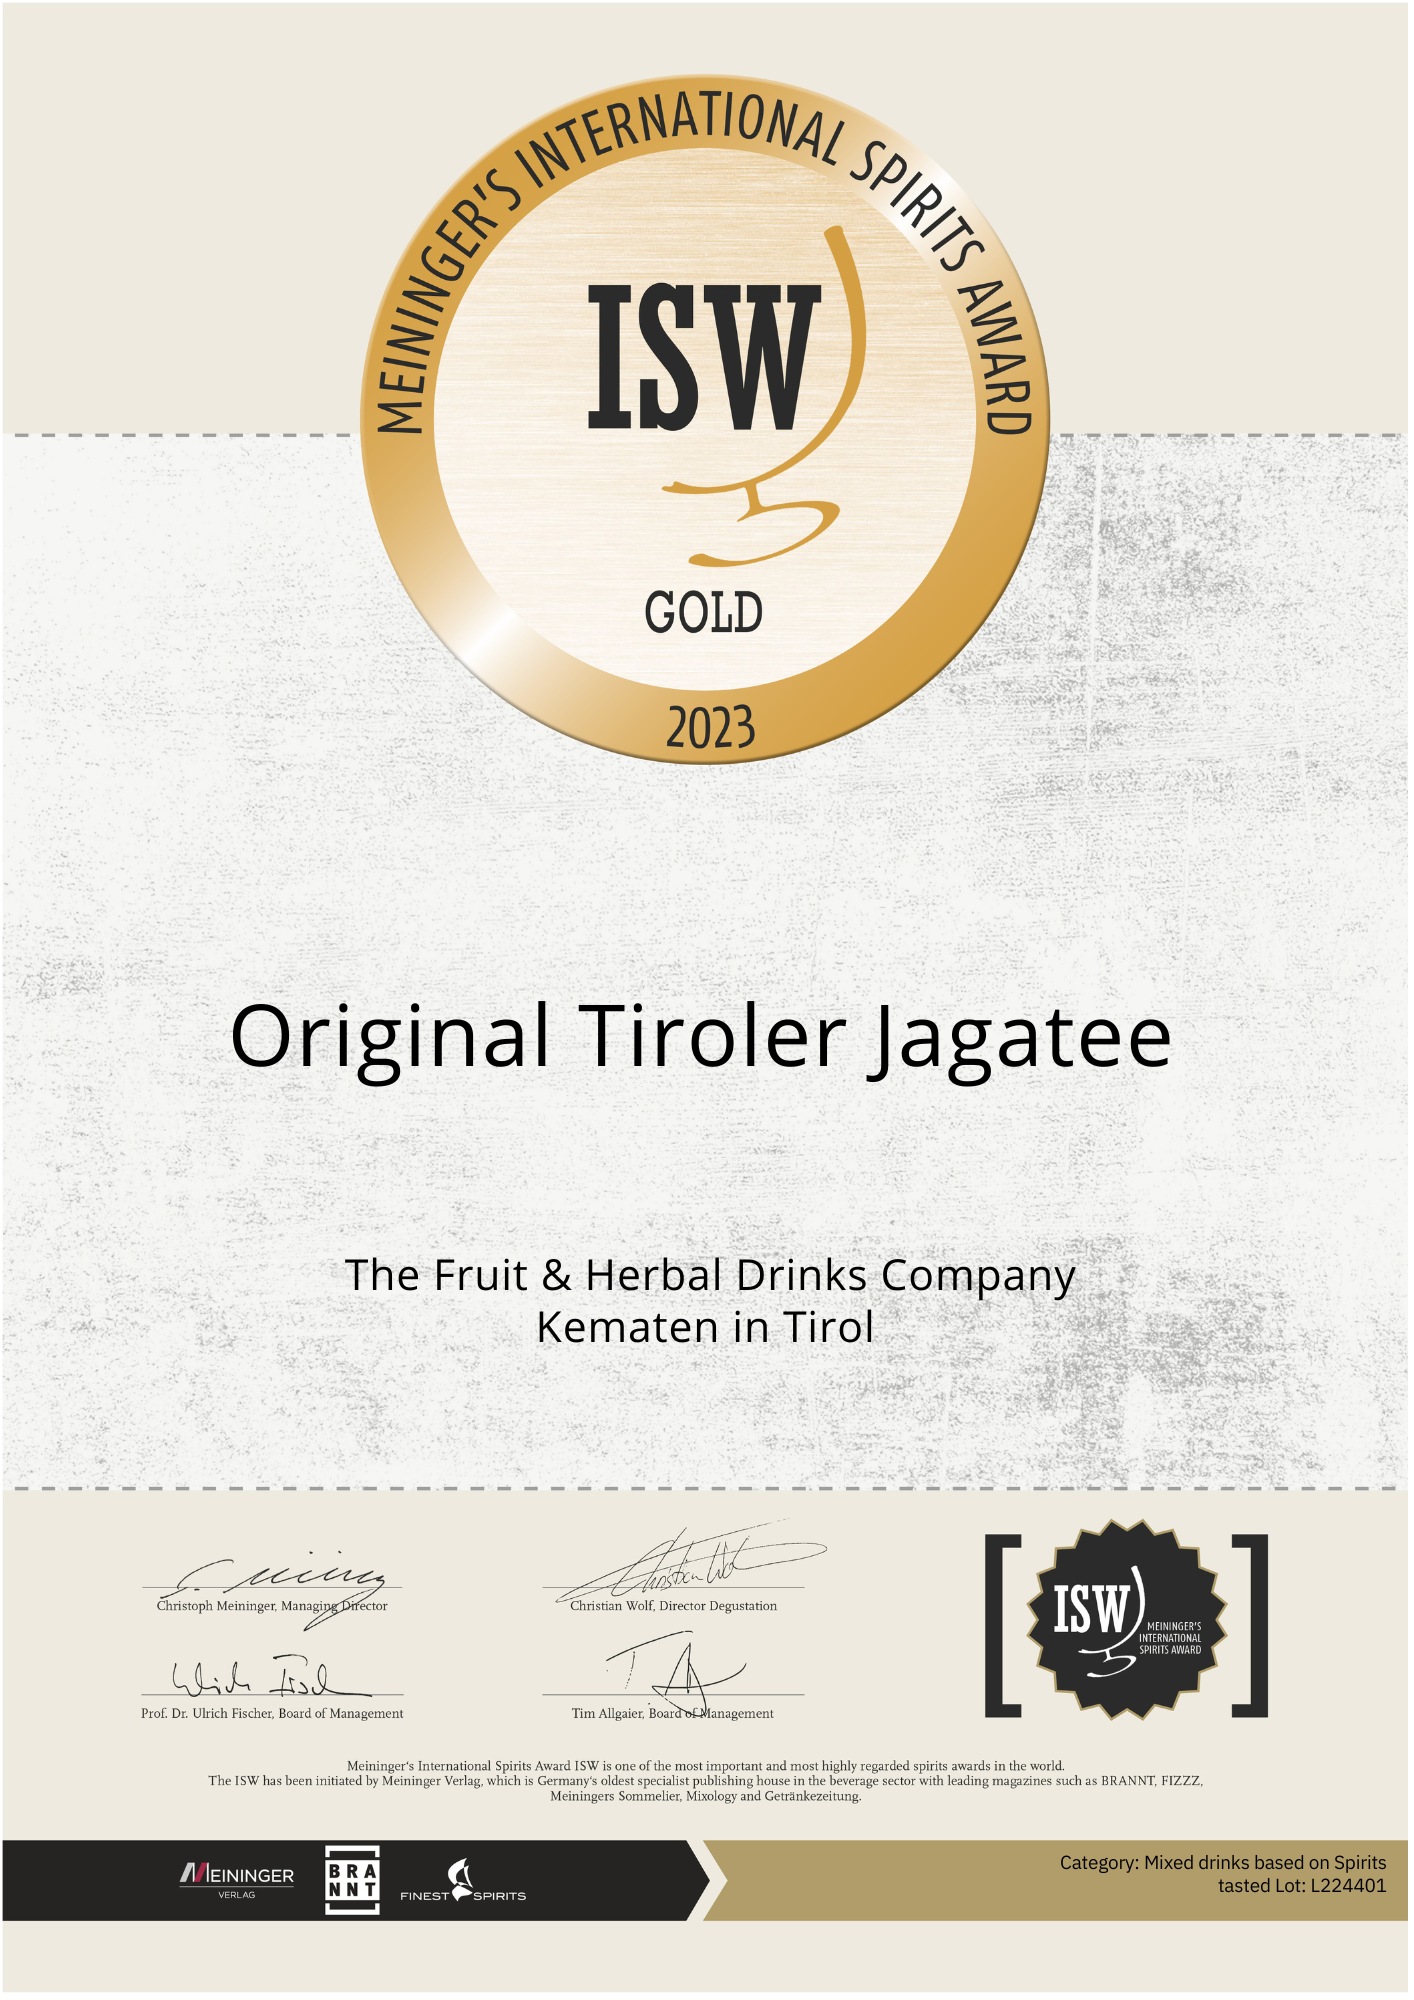 Certificate of Gold award-winning Jagatea of the  Tiroler Kräuterdestillerie 